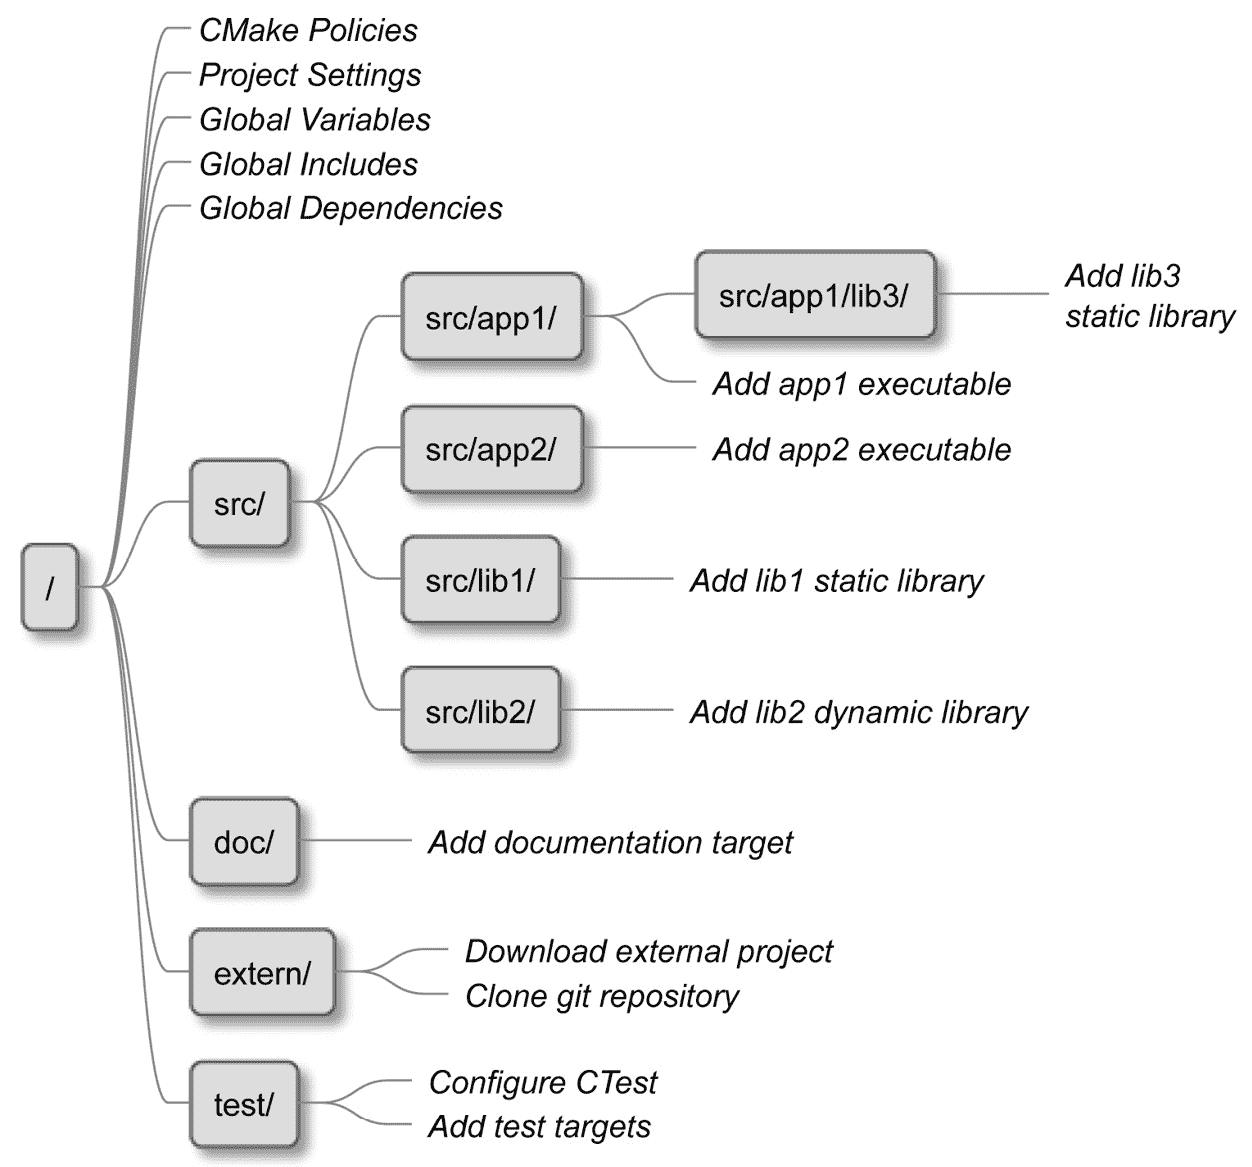 图 3.4 – CMake 如何将列表文件合并到一个项目中